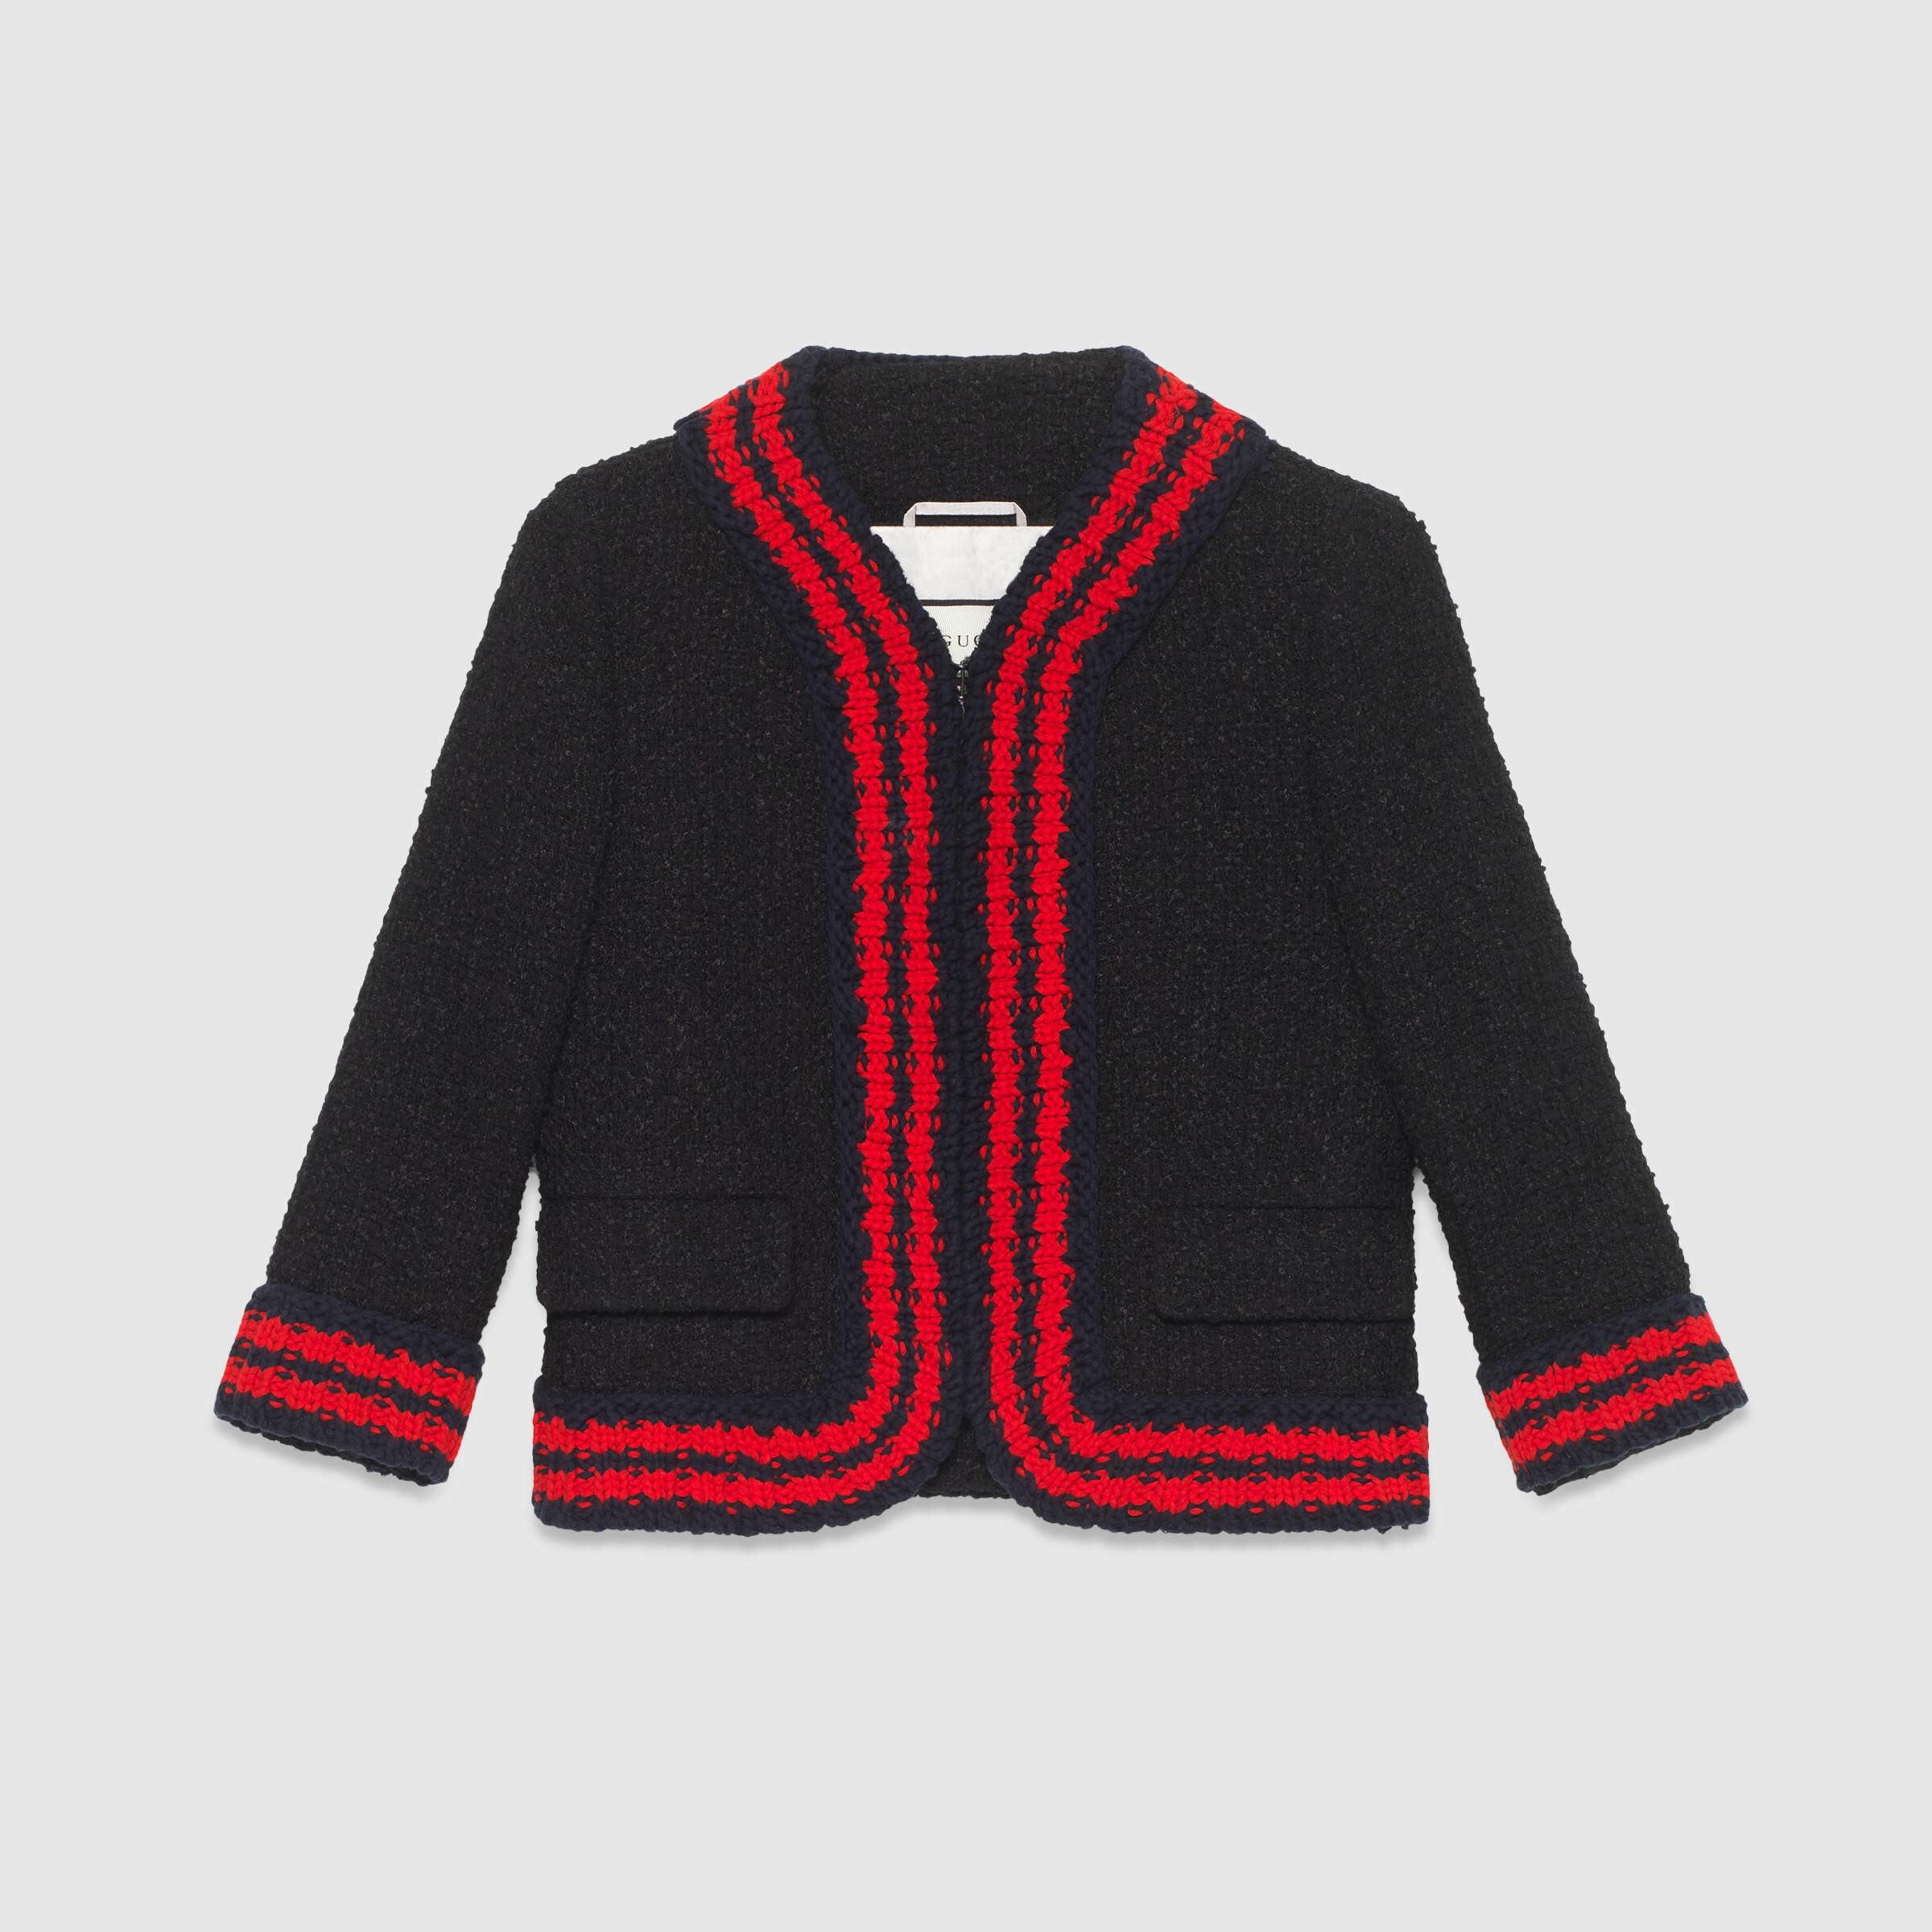 Gucci Tweed Jacket with Knit Wed Trim in Black.jpg